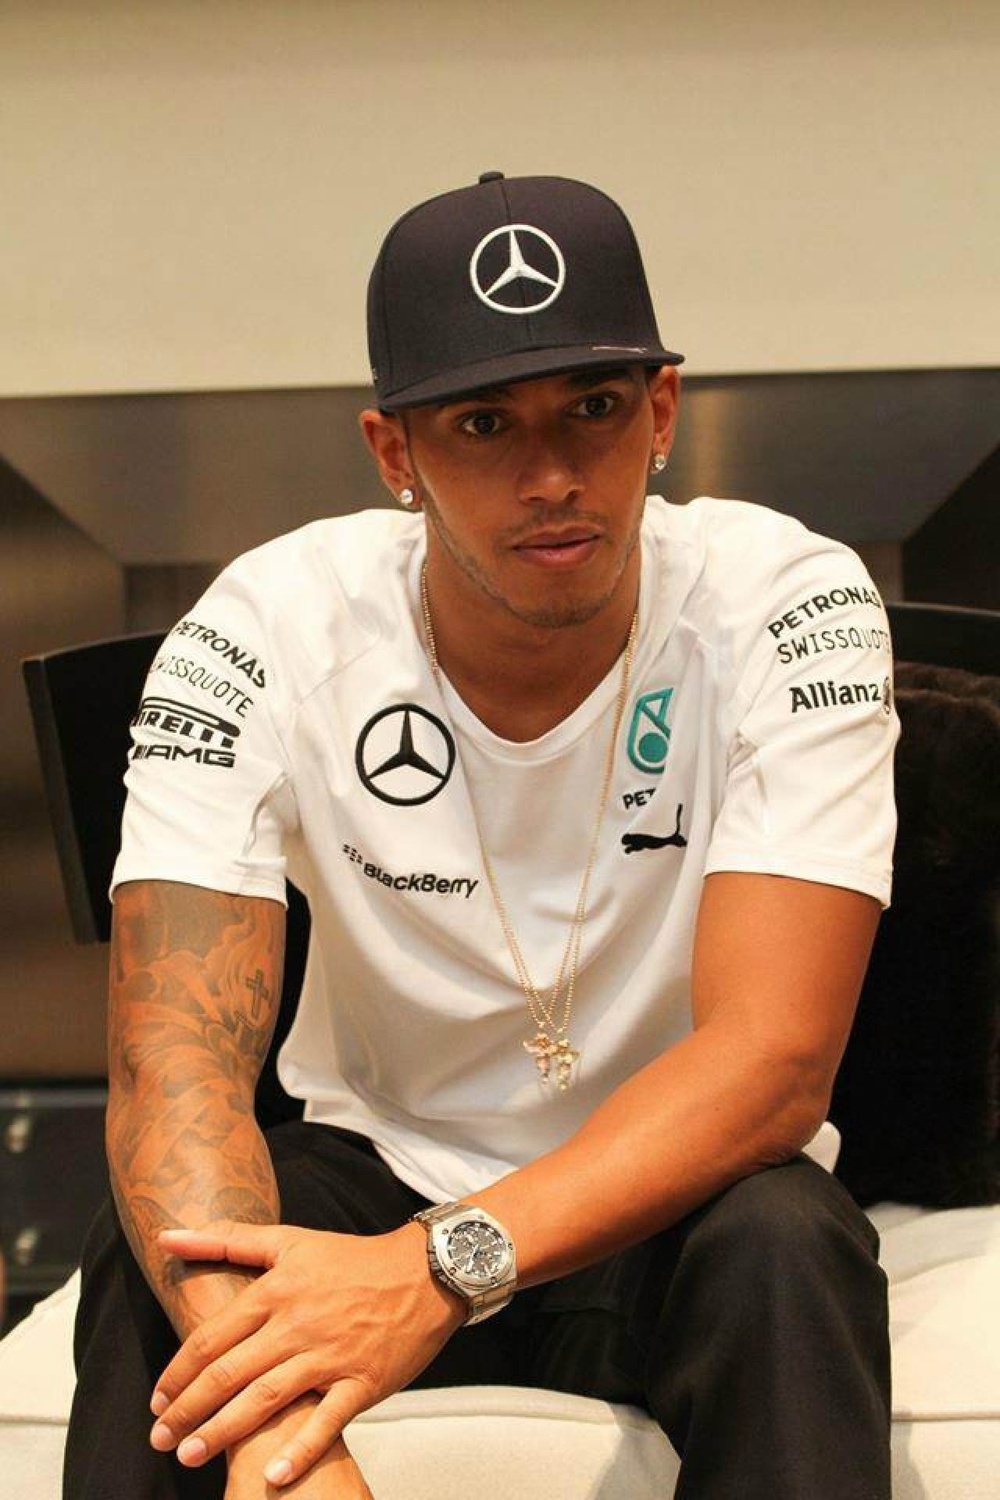 Bộ sưu tập đồng hồ của tay đua triệu phú Lewis Hamilton - Ảnh 7.